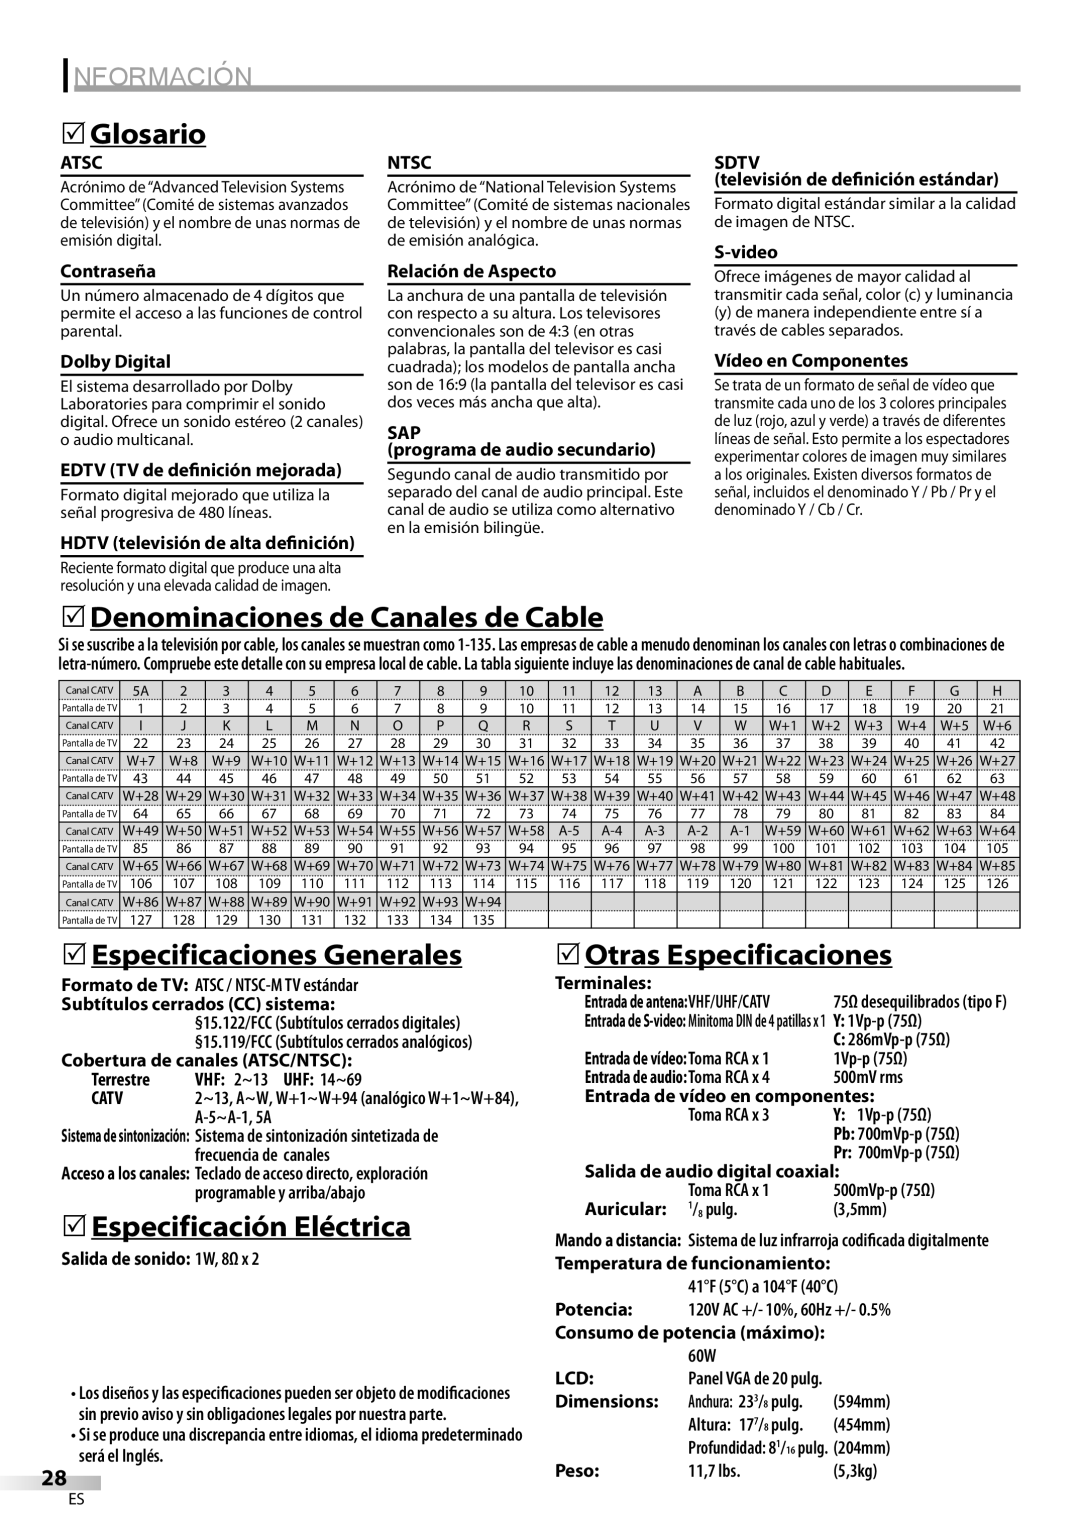 Sylvania LC200SL9 A Información, Glosario, 5Denominaciones de Canales de Cable, 5Especificaciones Generales, Atsc, Ntsc 